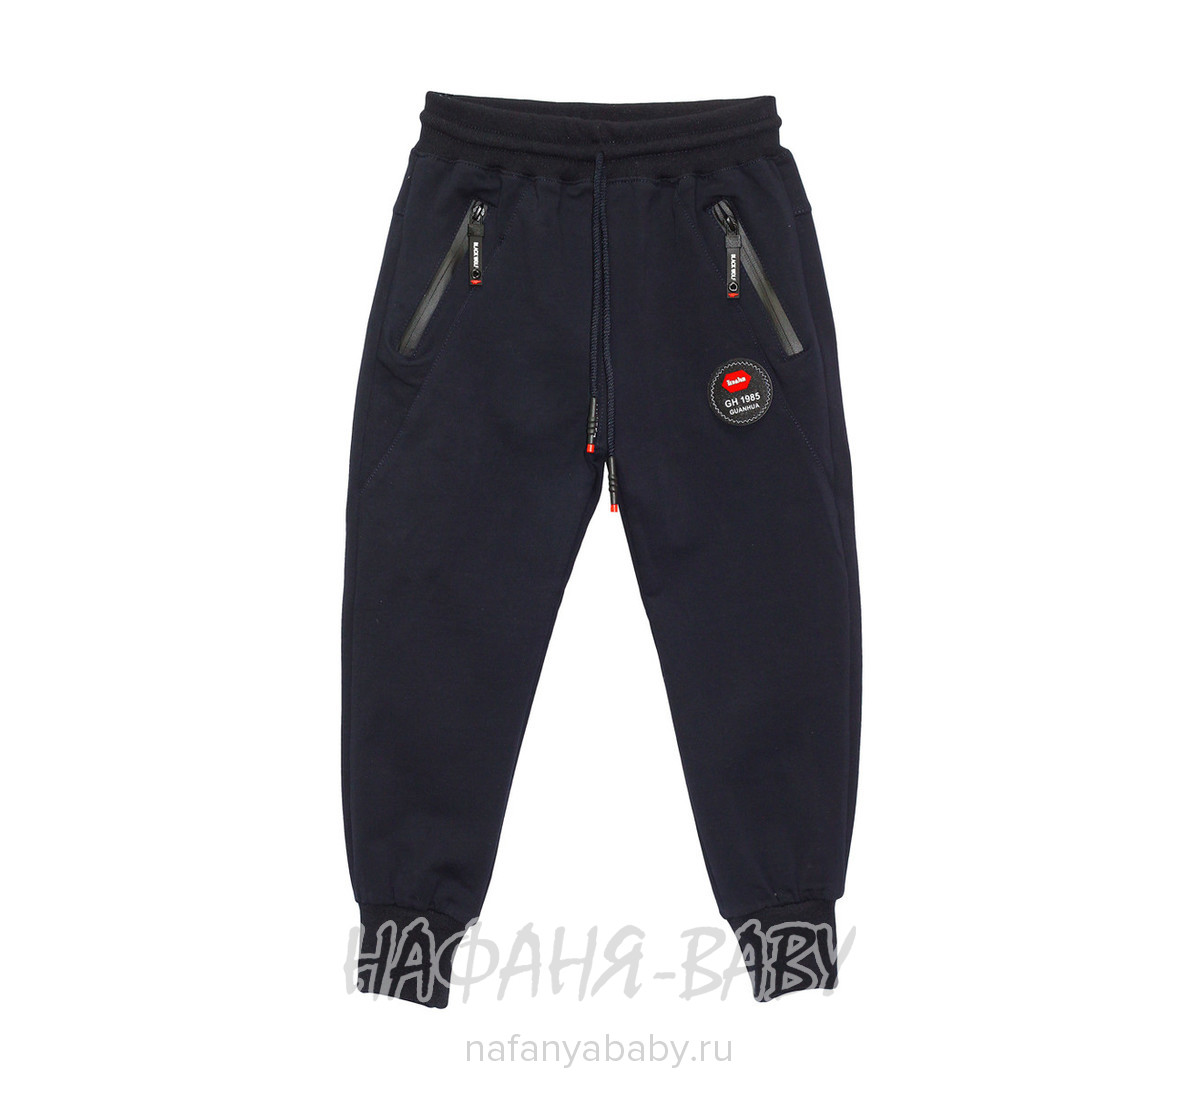 Подростковые трикотажные спортивные брюки EMUR, купить в интернет магазине Нафаня. арт: 1722.